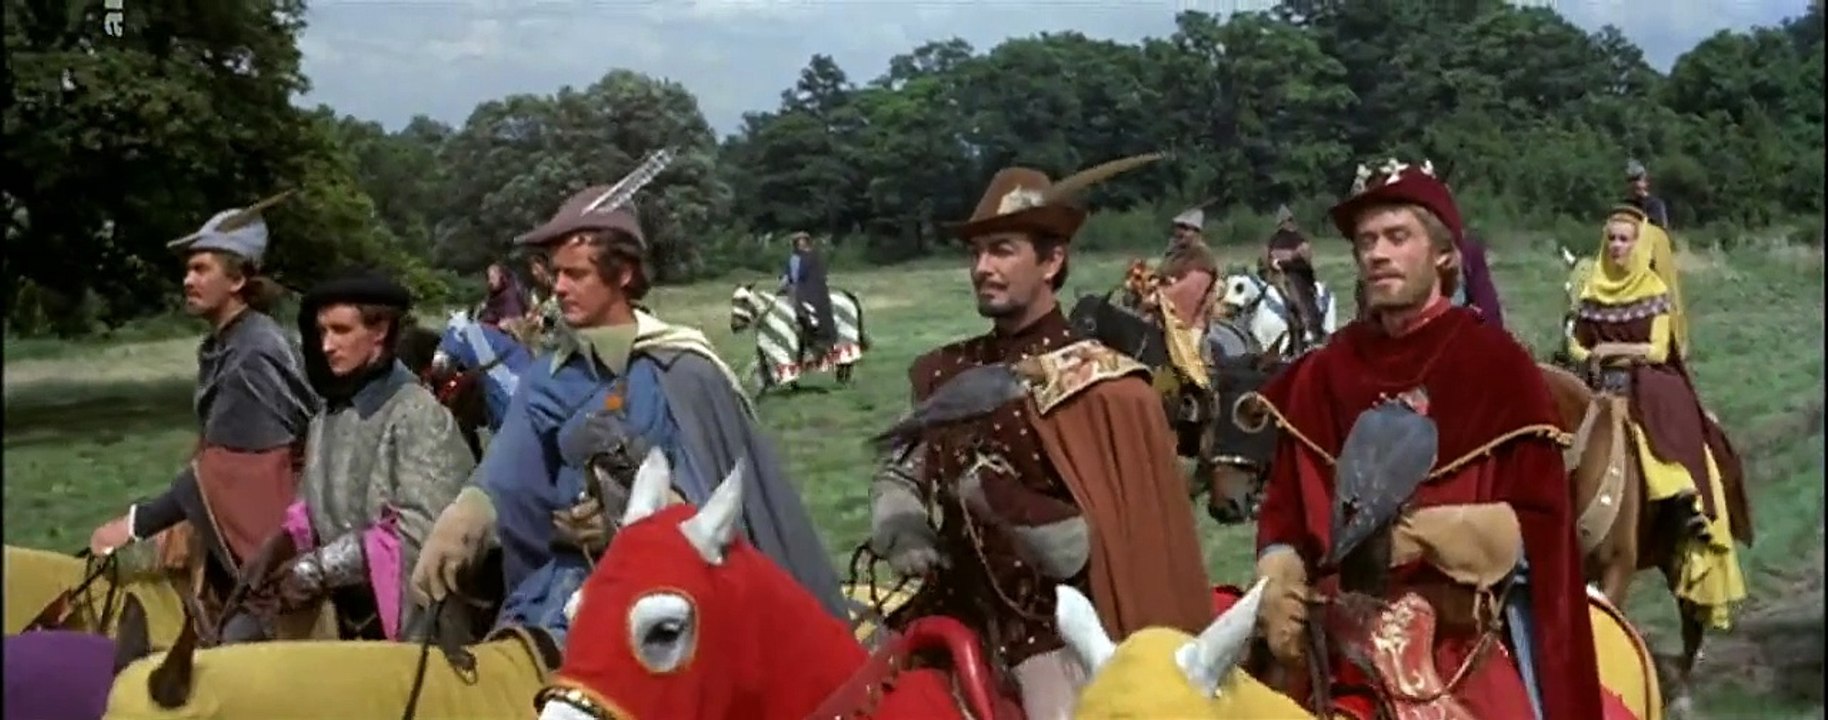 Die Ritter der Tafelrunde (1953) stream deutsch anschauen